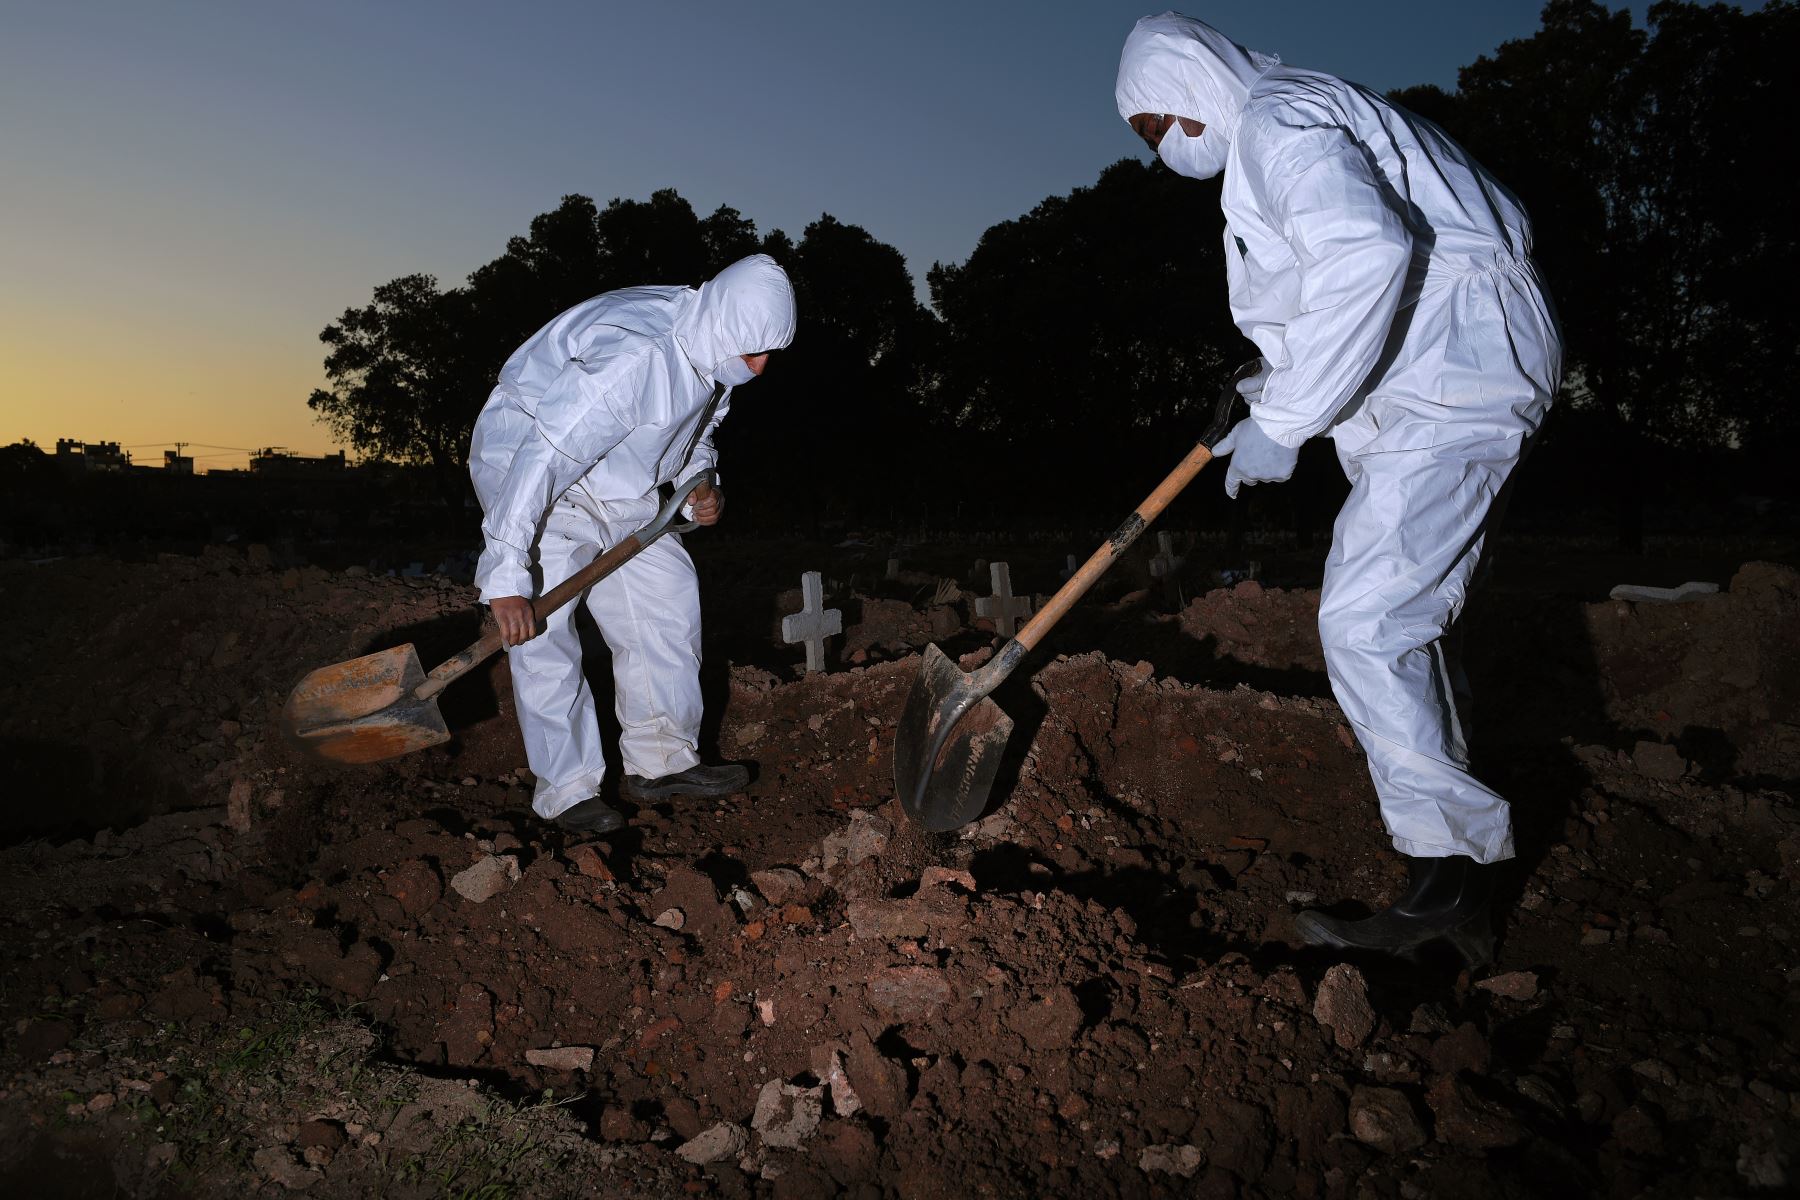 Los trabajadores del cementerio con ropa protectora entierran a una víctima de COVID-19 en el cementerio de Sao Francisco Xavier en Río de Janeiro, Brasil. Foto: AFP